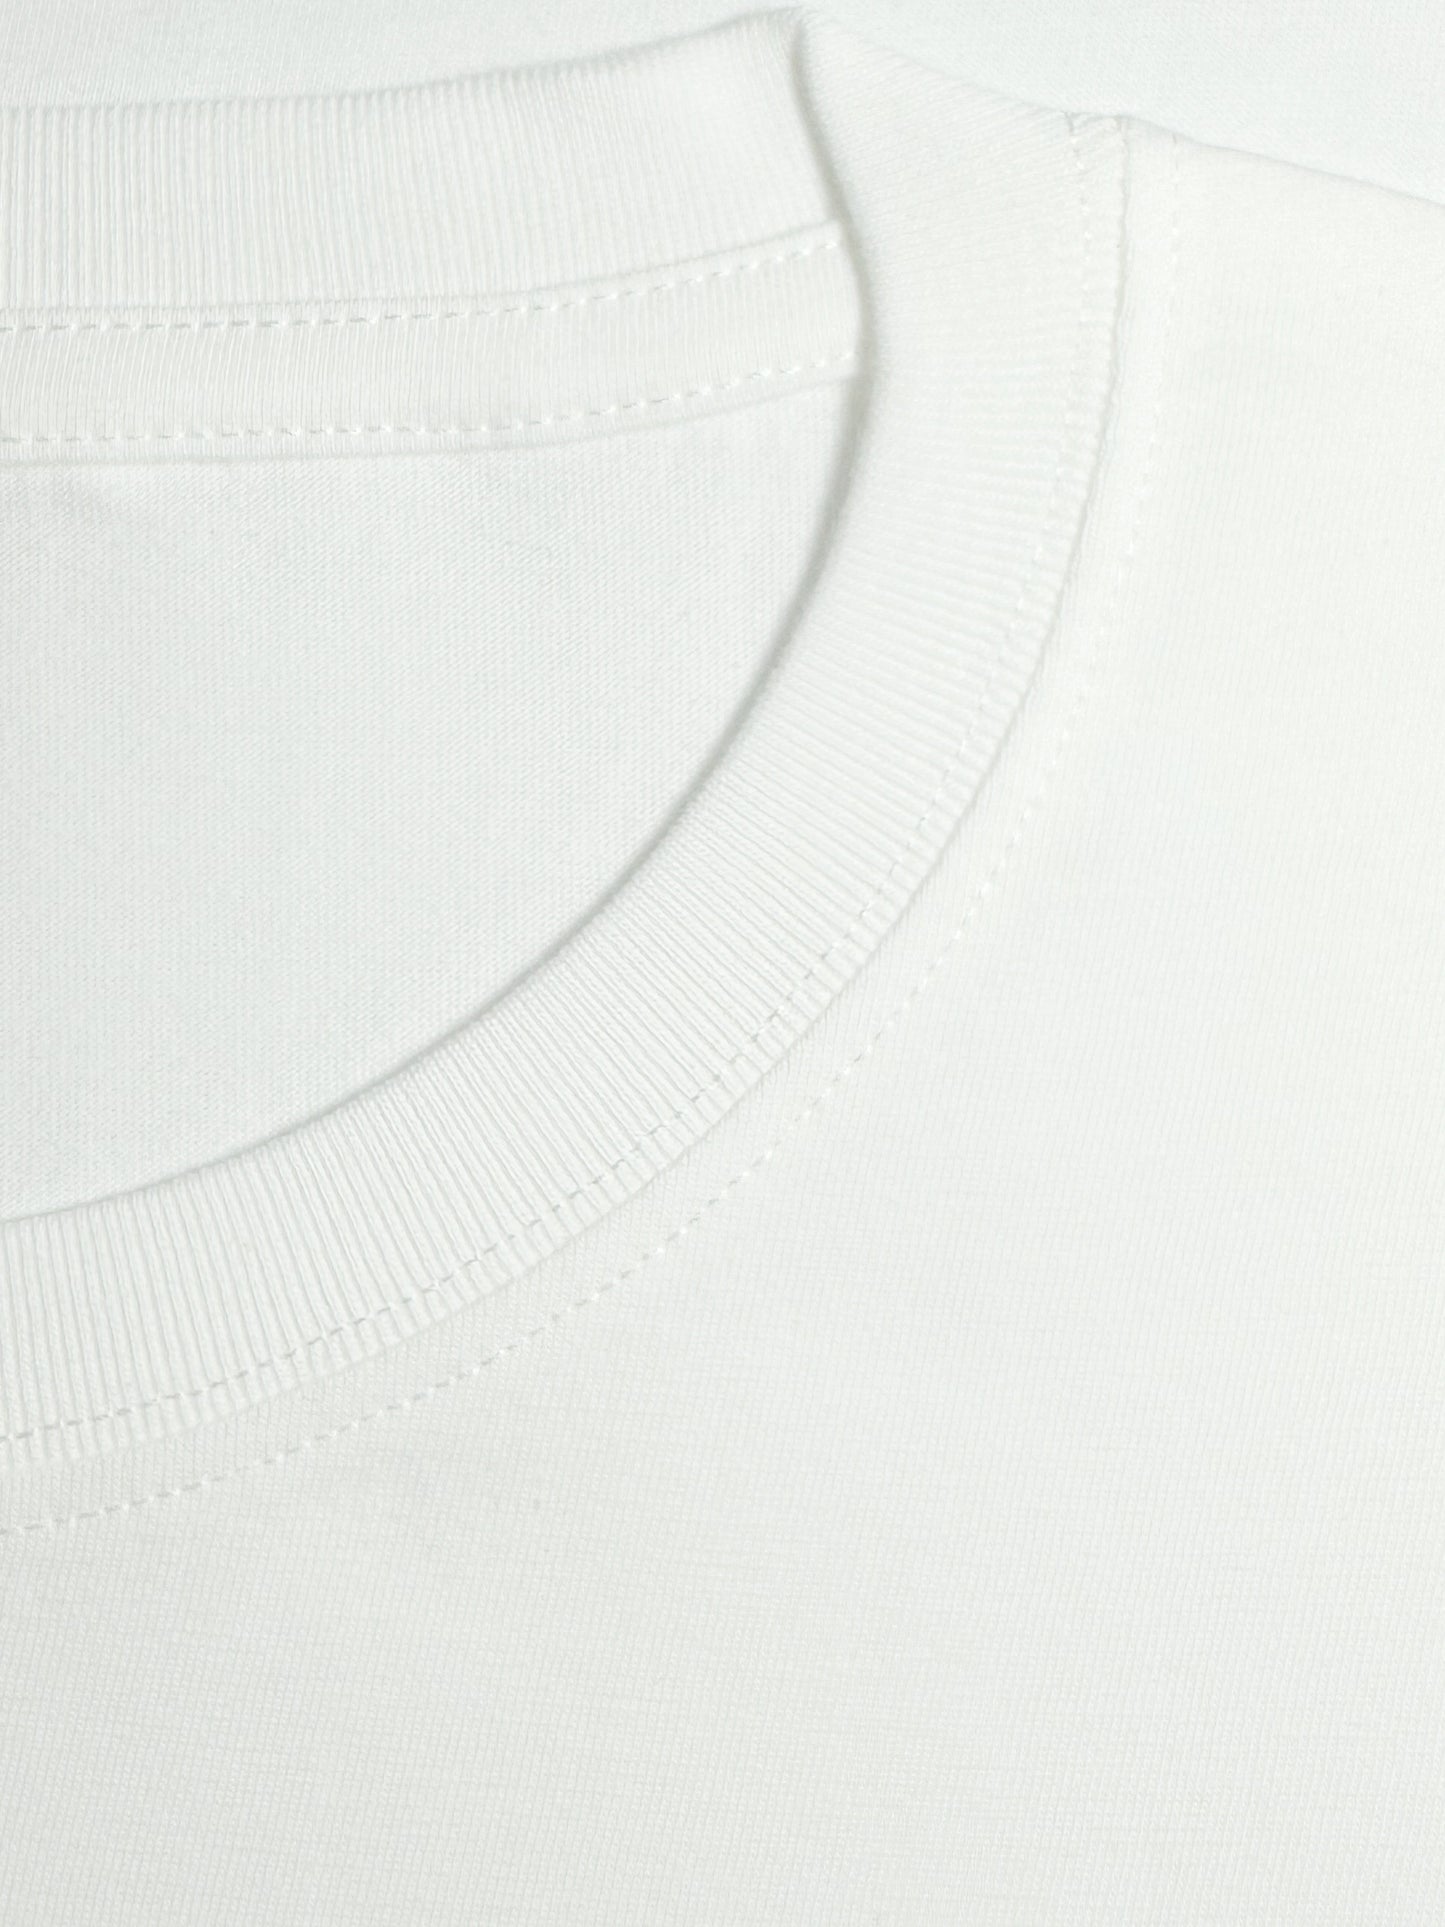 Men's Cotton Portrait Print Sport T-Shirt - Stretch Round Neck - Vintage Style